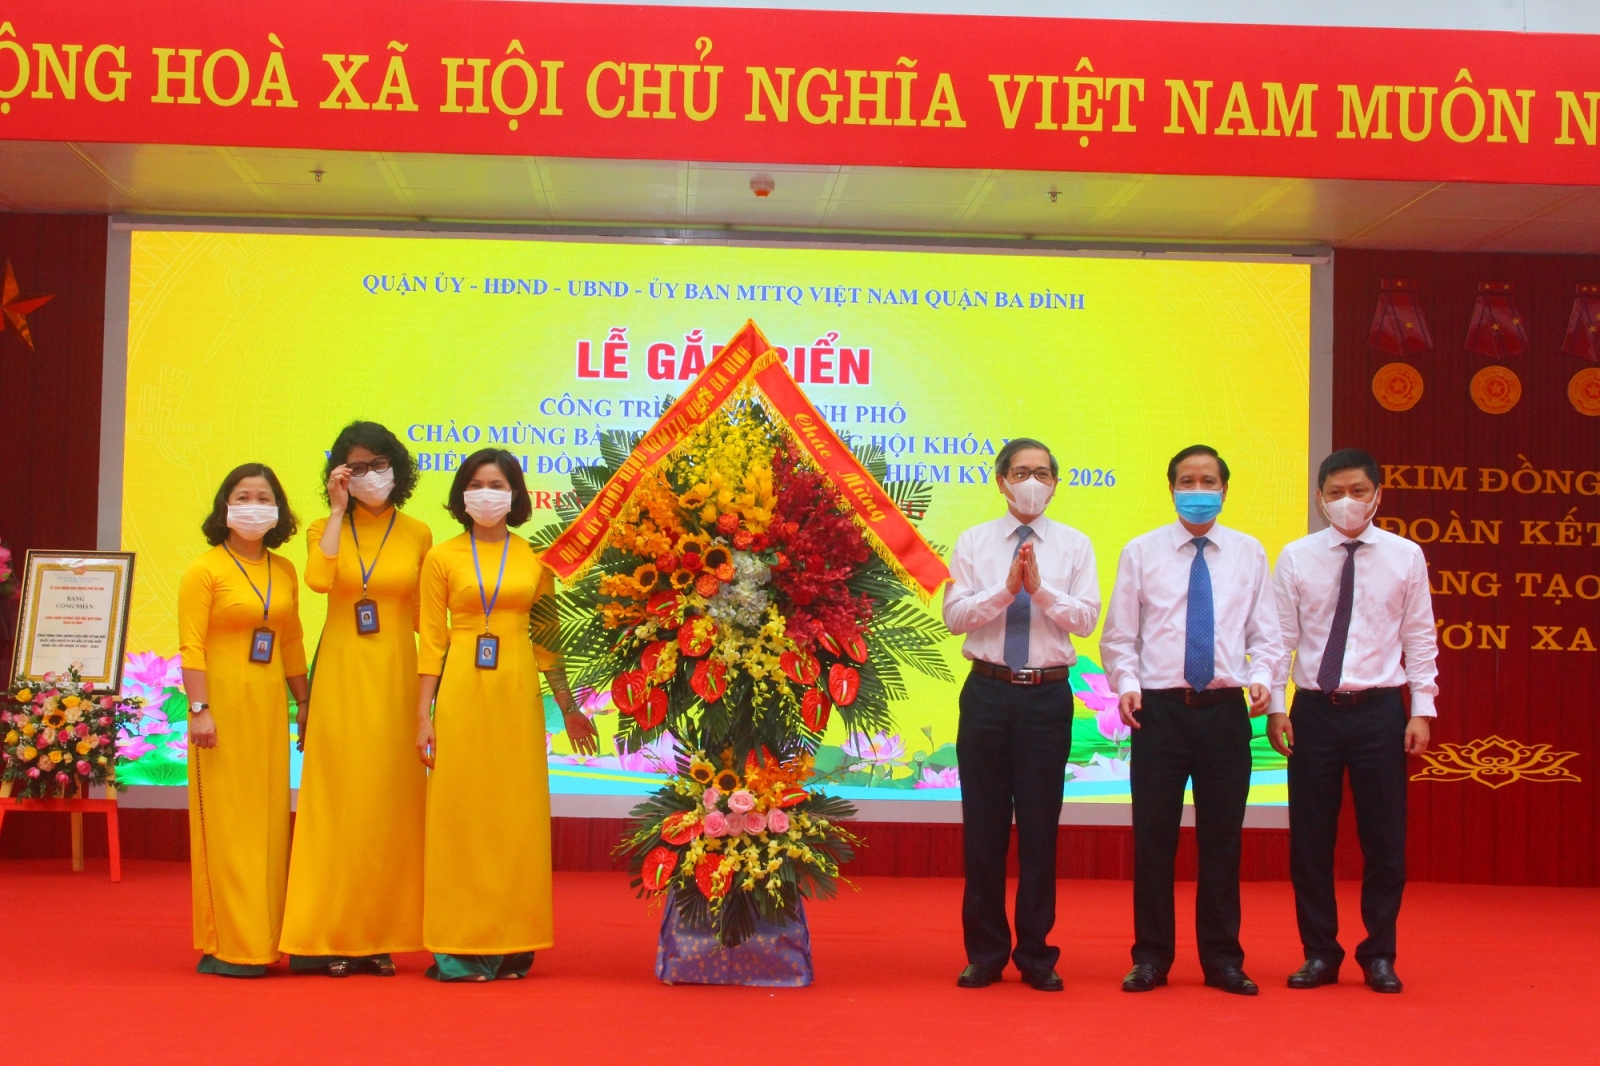 Hà Nội: Gắn biển công trình trường học cấp thành phố chào mừng Bầu cử  - Ảnh minh hoạ 2